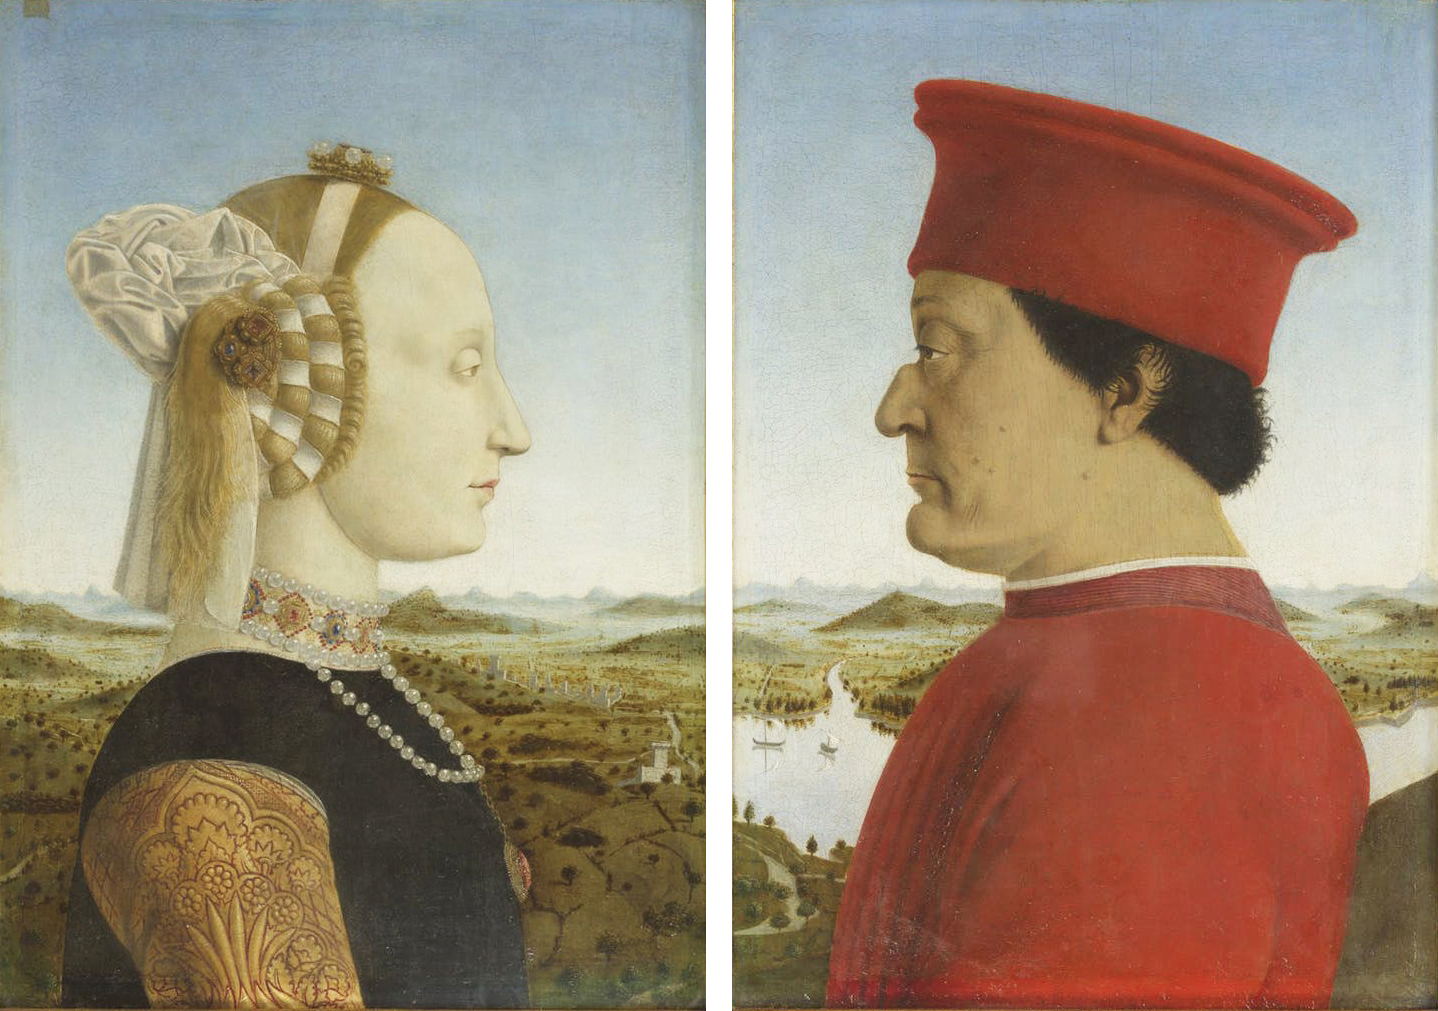 Duchi di Urbino, a painting by Piero della Francesca